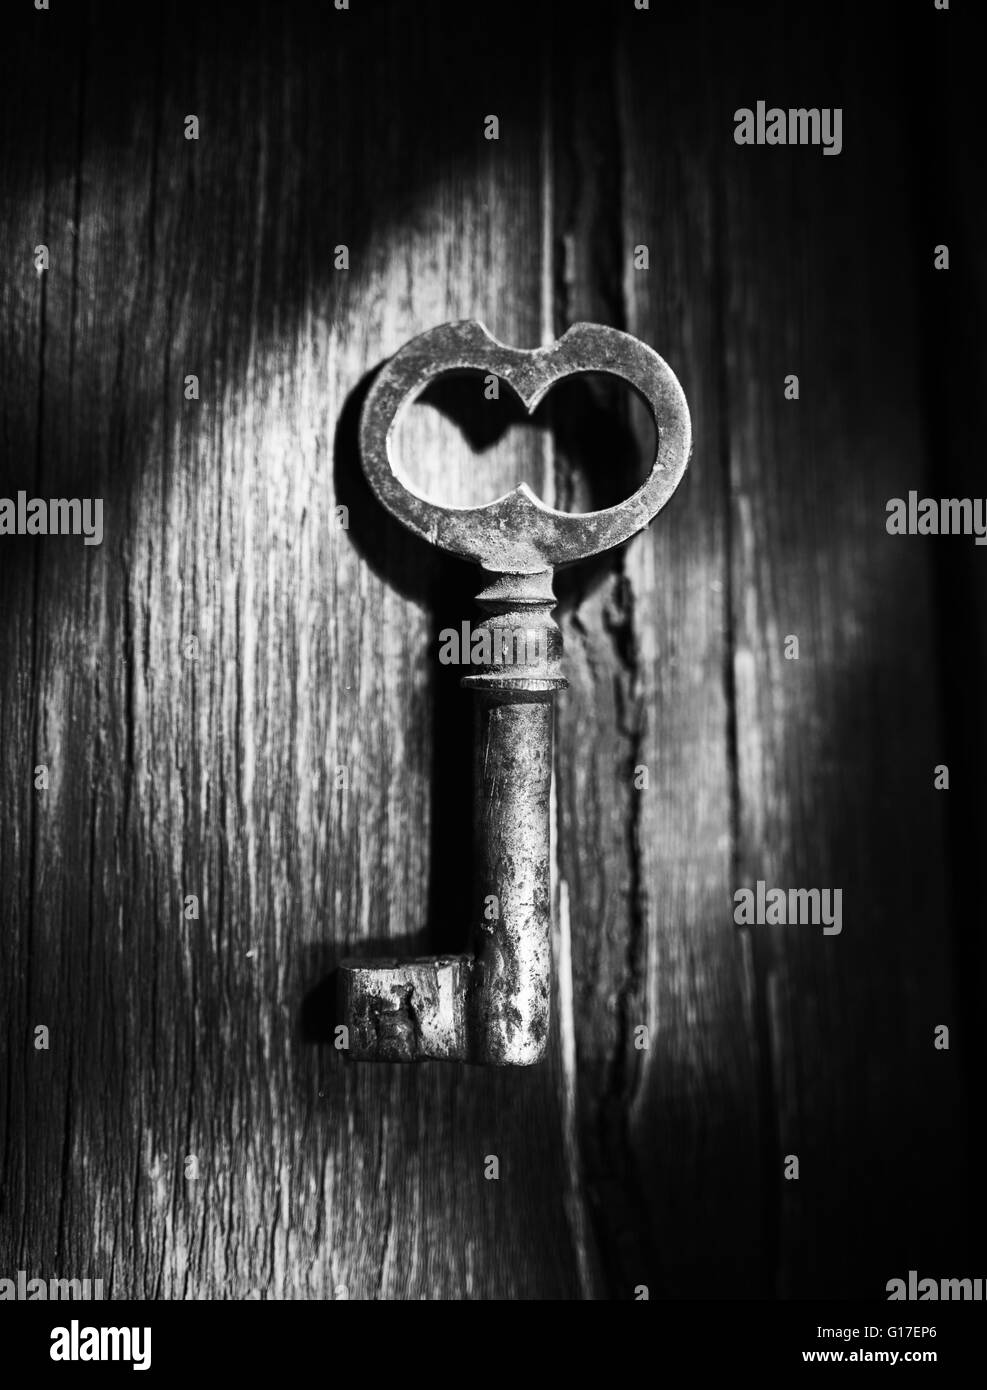 Rostiger Schlüssel auf alten hölzernen Oberfläche, schwarz / weiß Foto Stockfoto